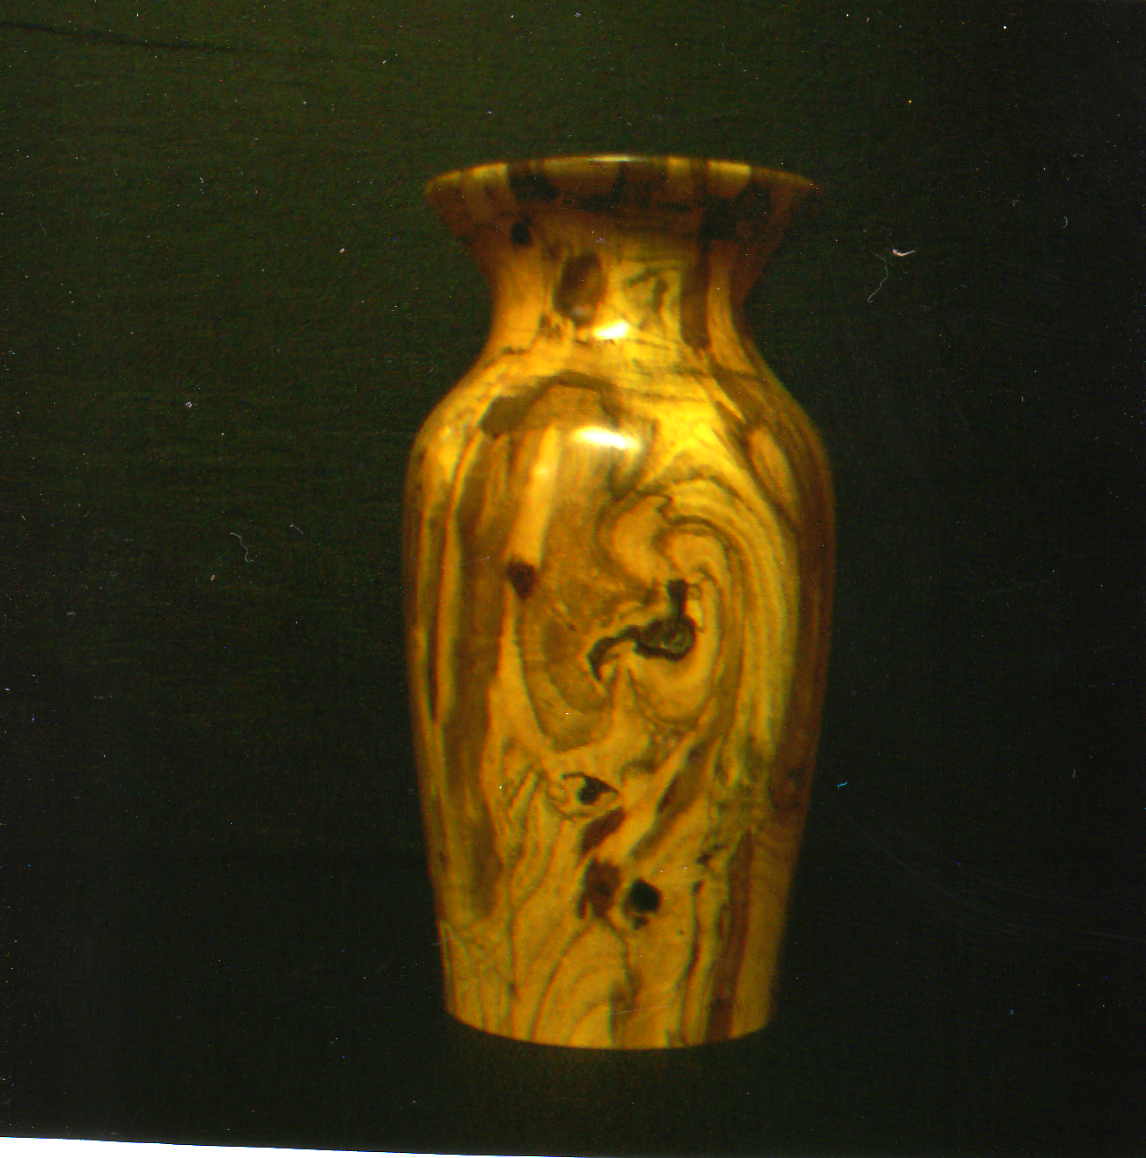 Spalted oak vase